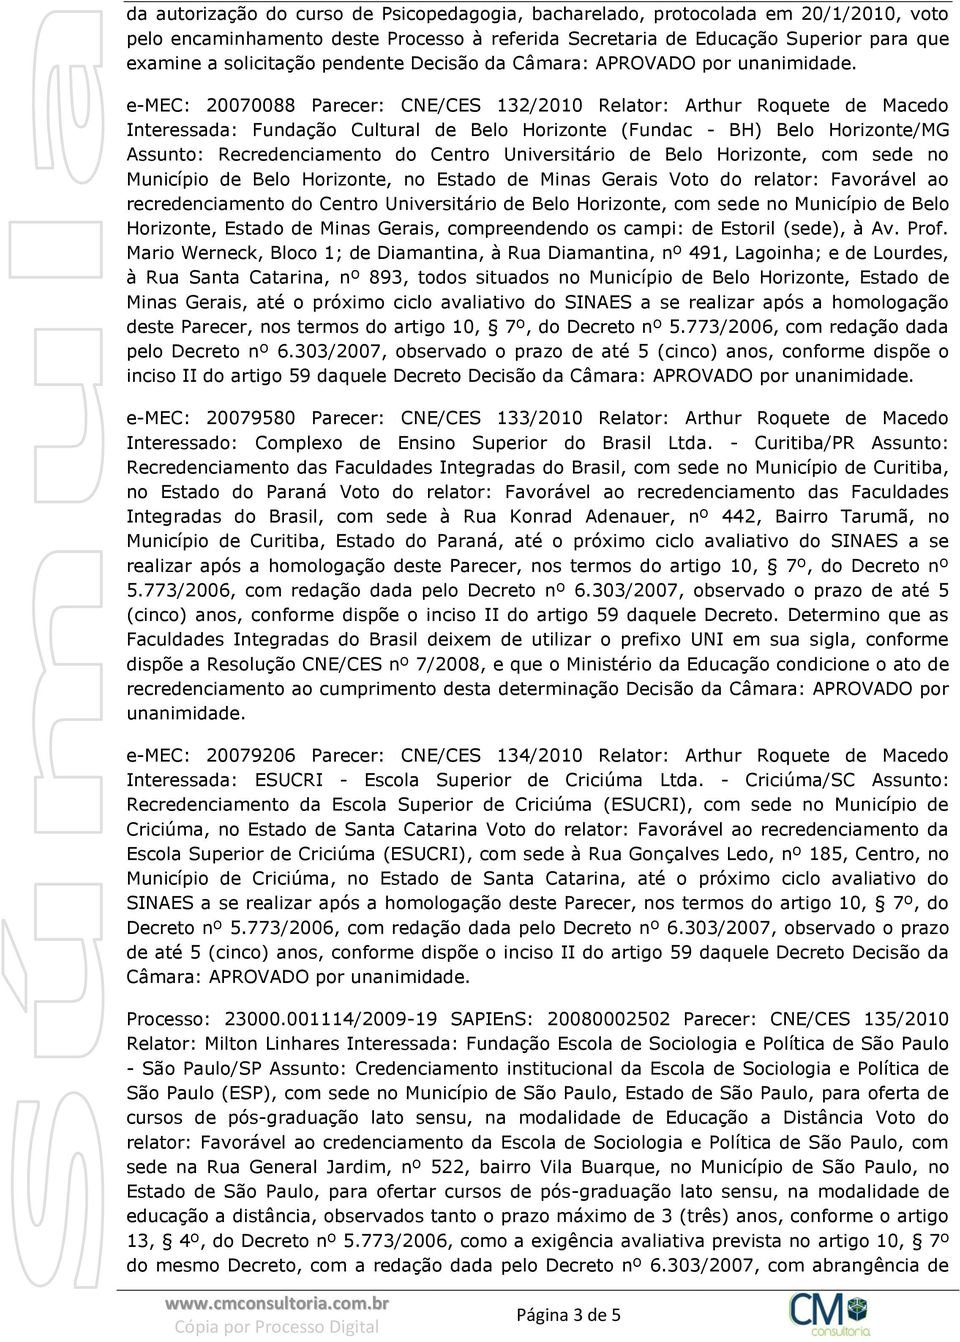 Recredenciamento do Centro Universitário de Belo Horizonte, com sede no Município de Belo Horizonte, no Estado de Minas Gerais Voto do relator: Favorável ao recredenciamento do Centro Universitário